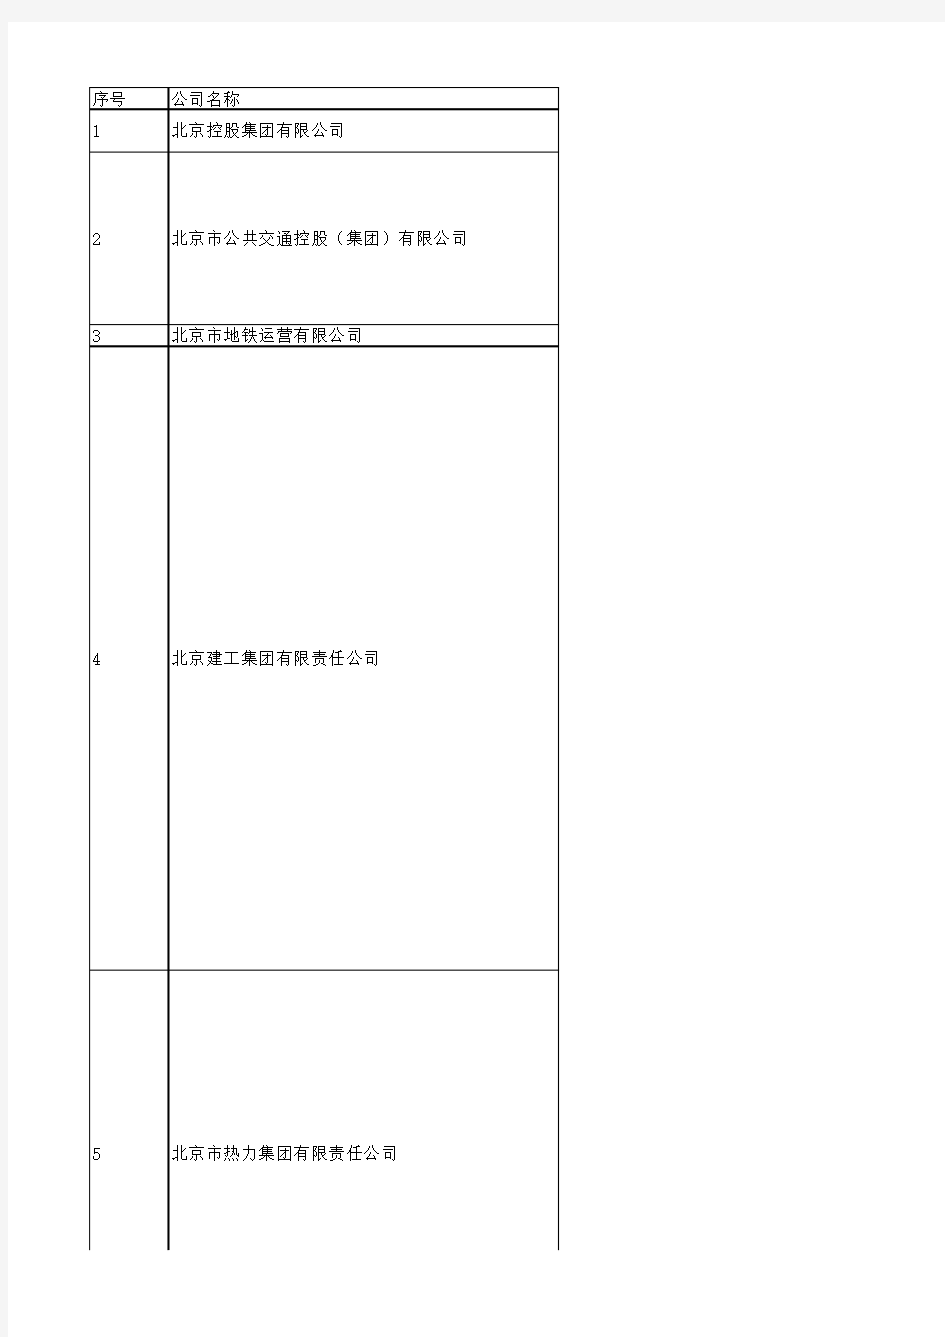 北京市国企名单_国资委下属企业名单(142家)